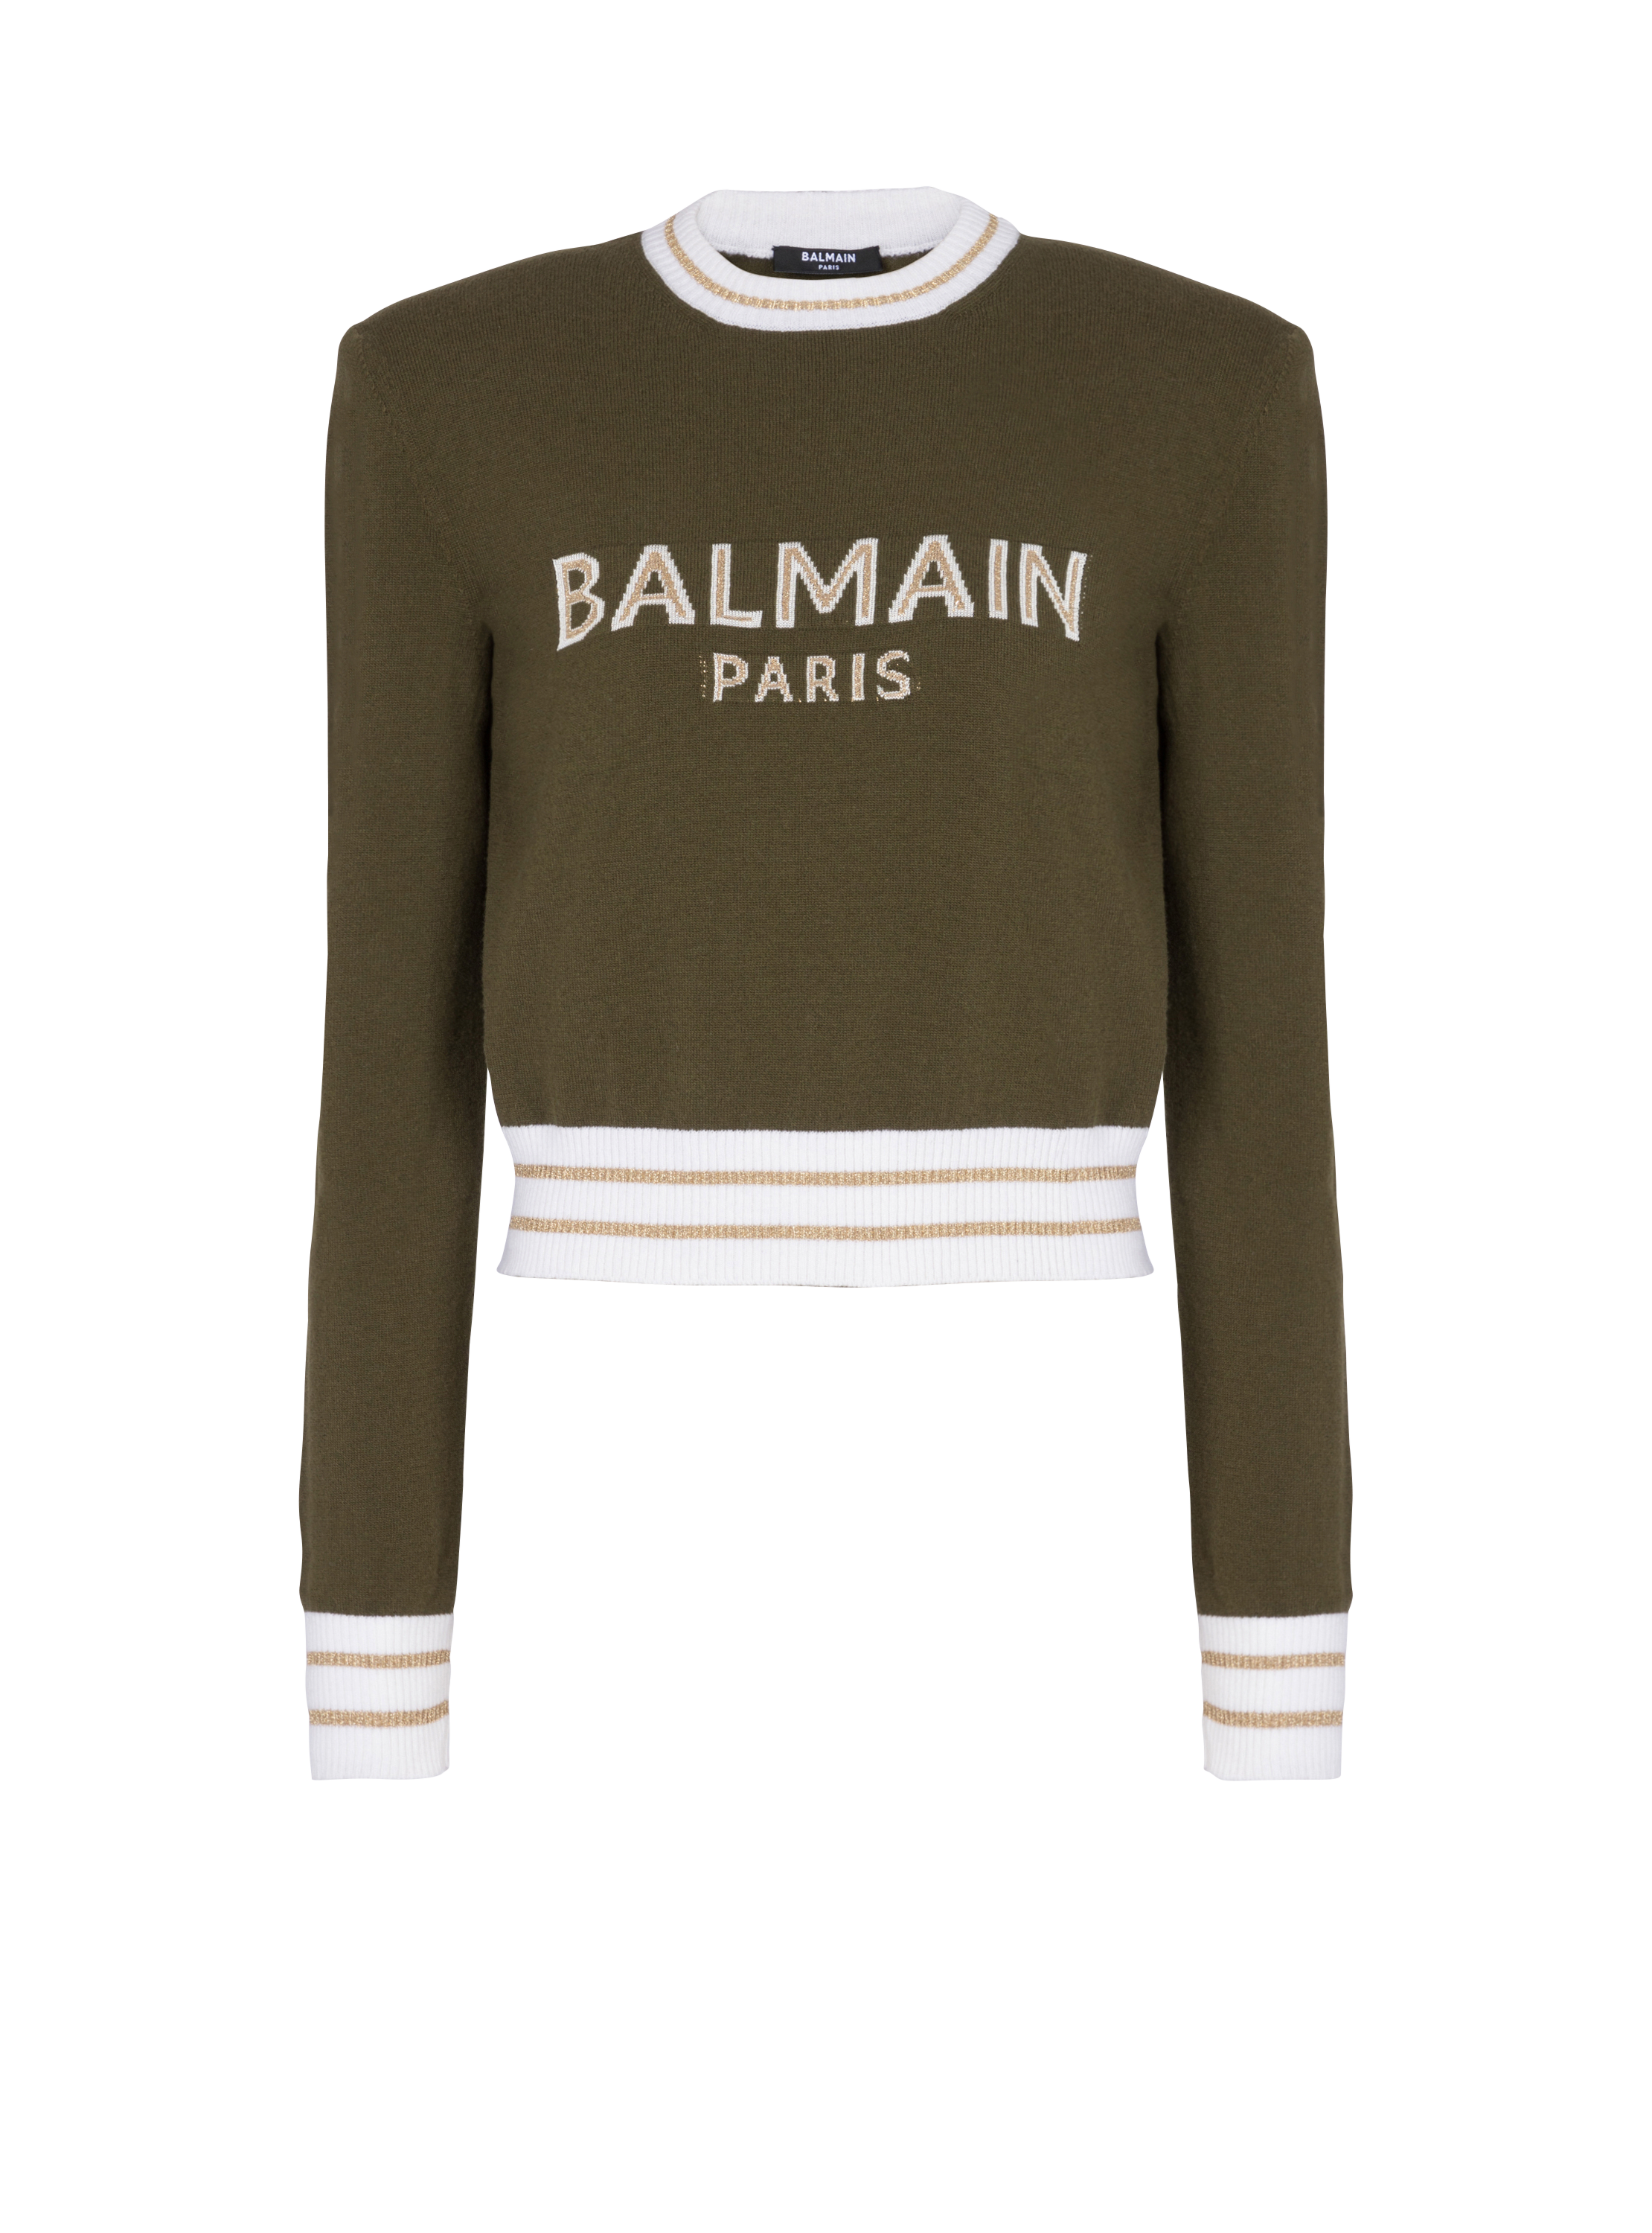 Balmain巴尔曼标志短款羊毛运动衫, khaki, hi-res